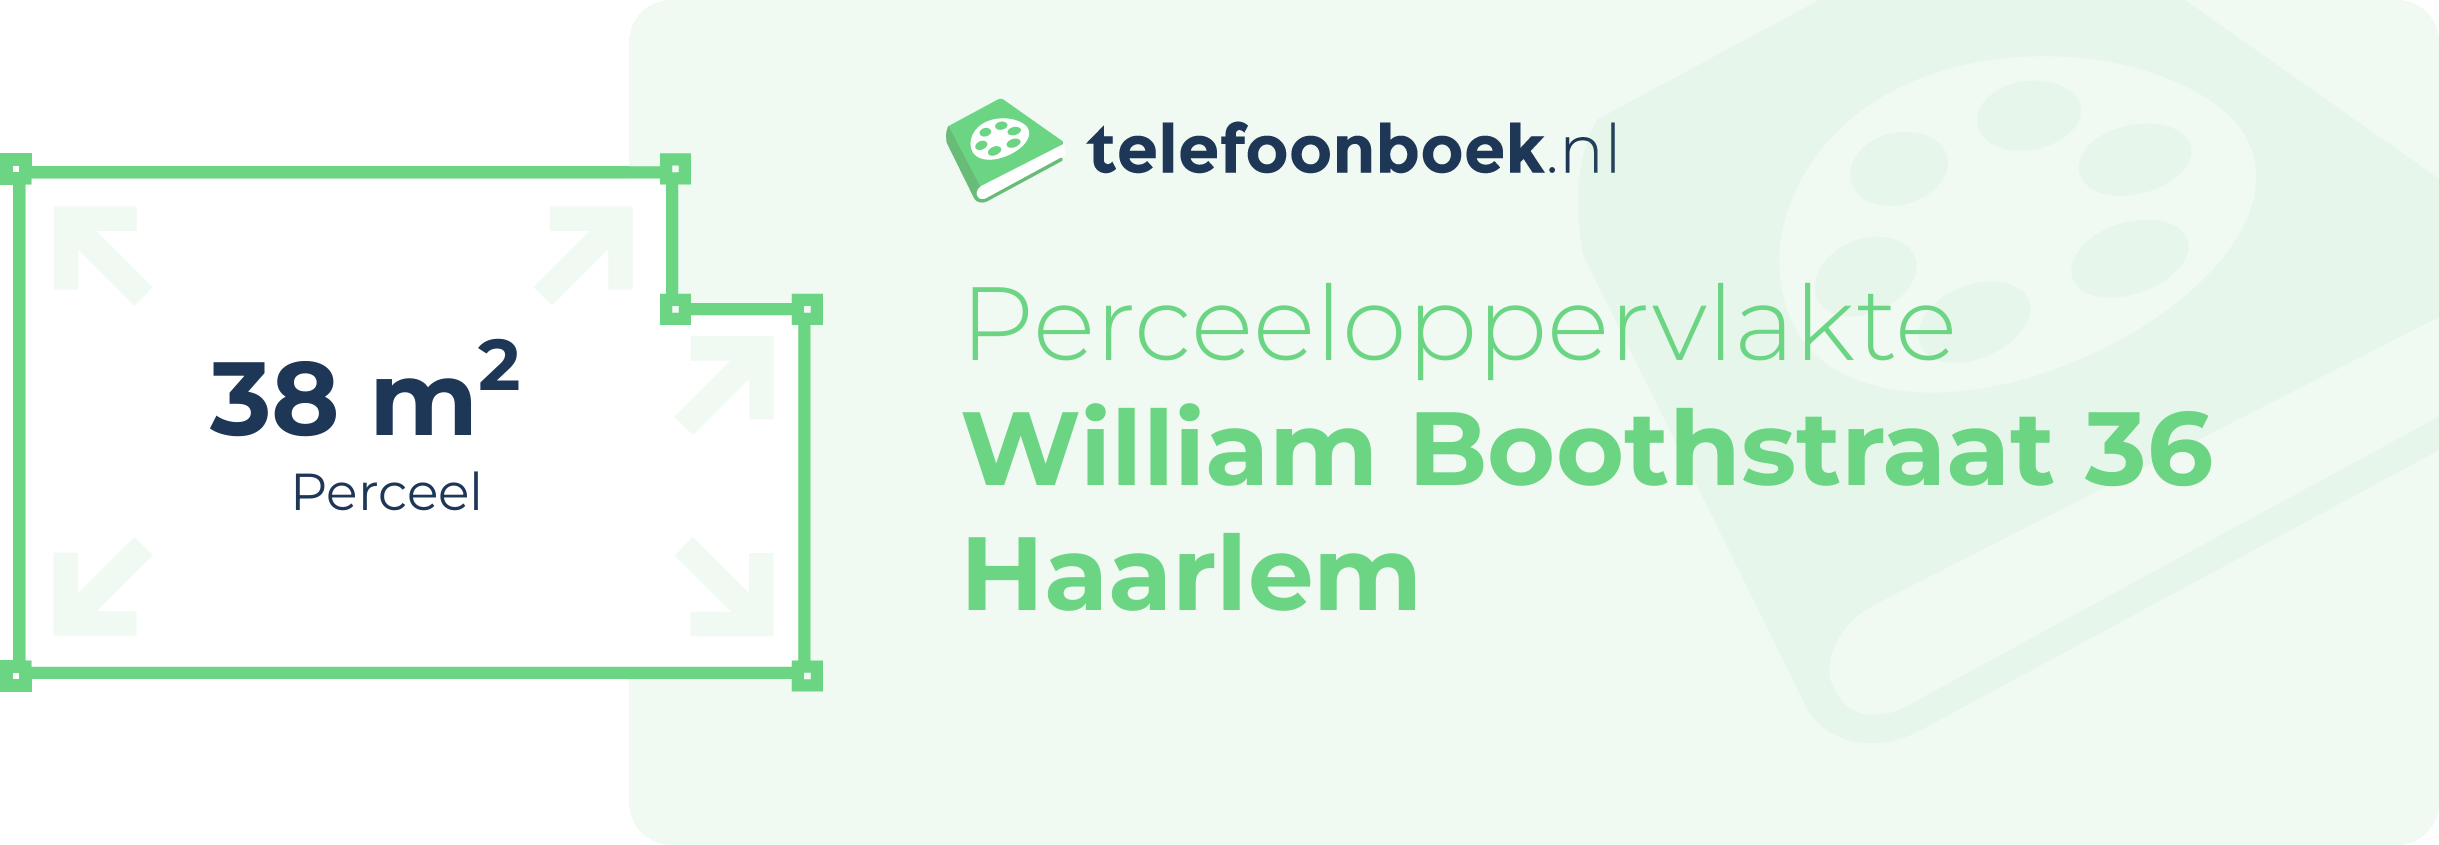 Perceeloppervlakte William Boothstraat 36 Haarlem